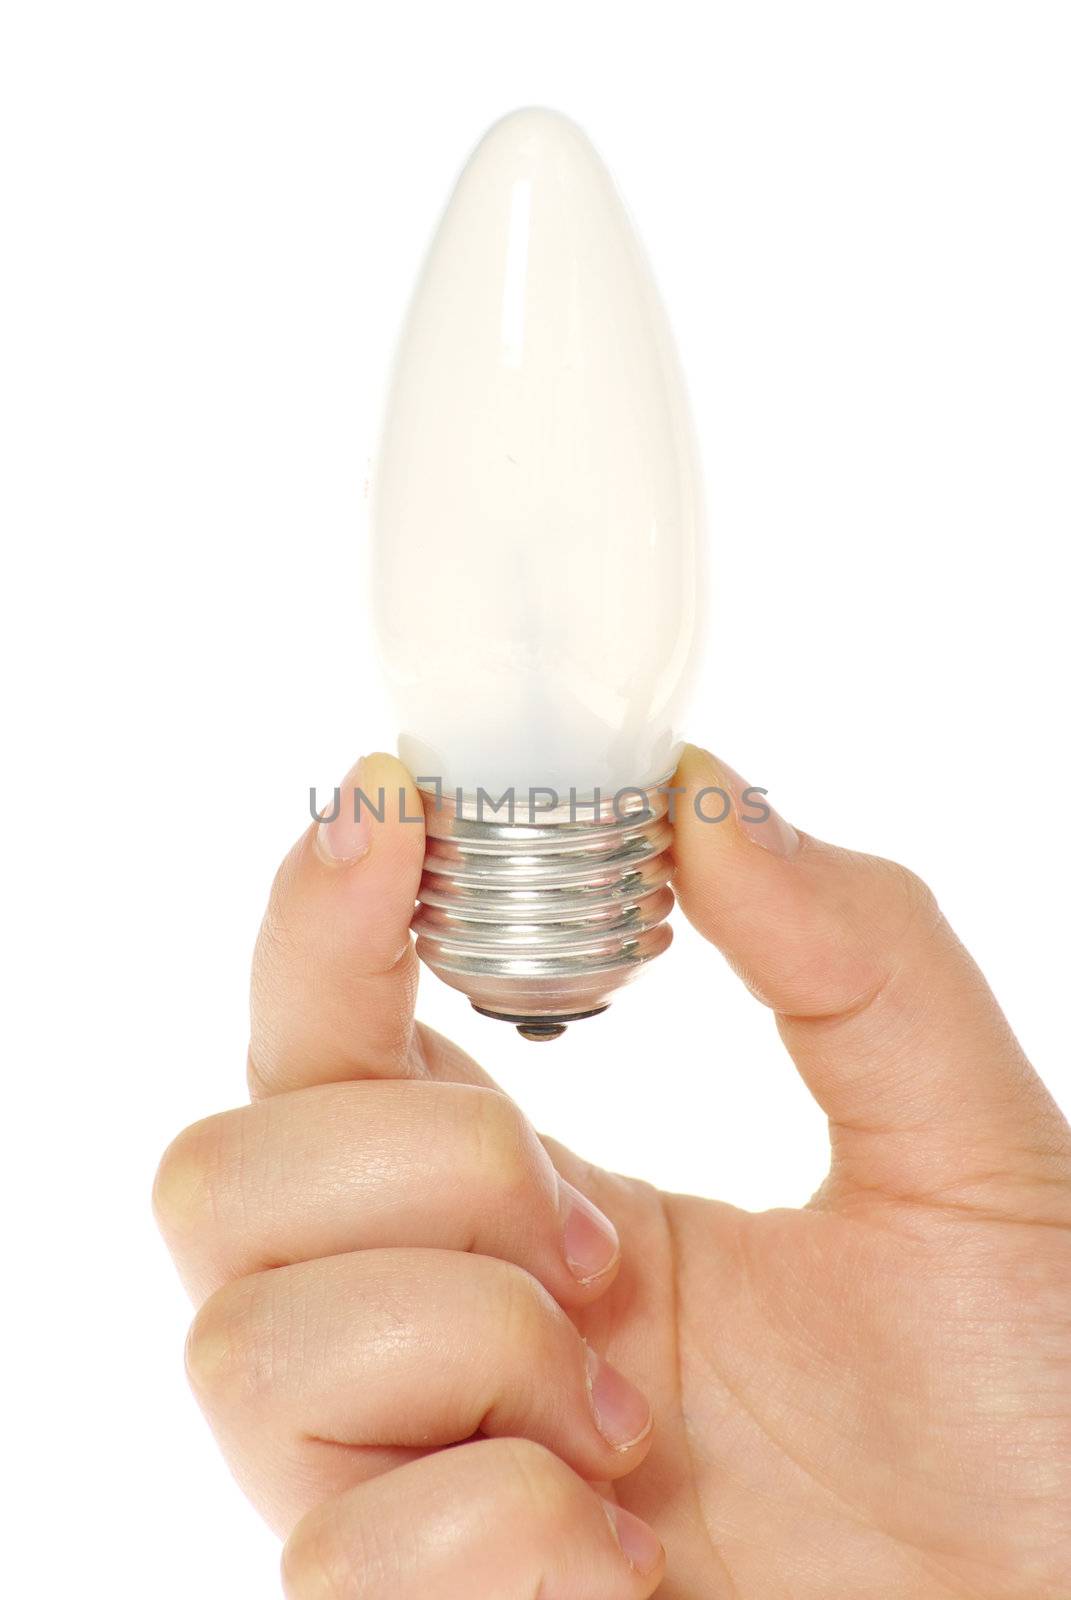  hand holding bulb by Pakhnyushchyy